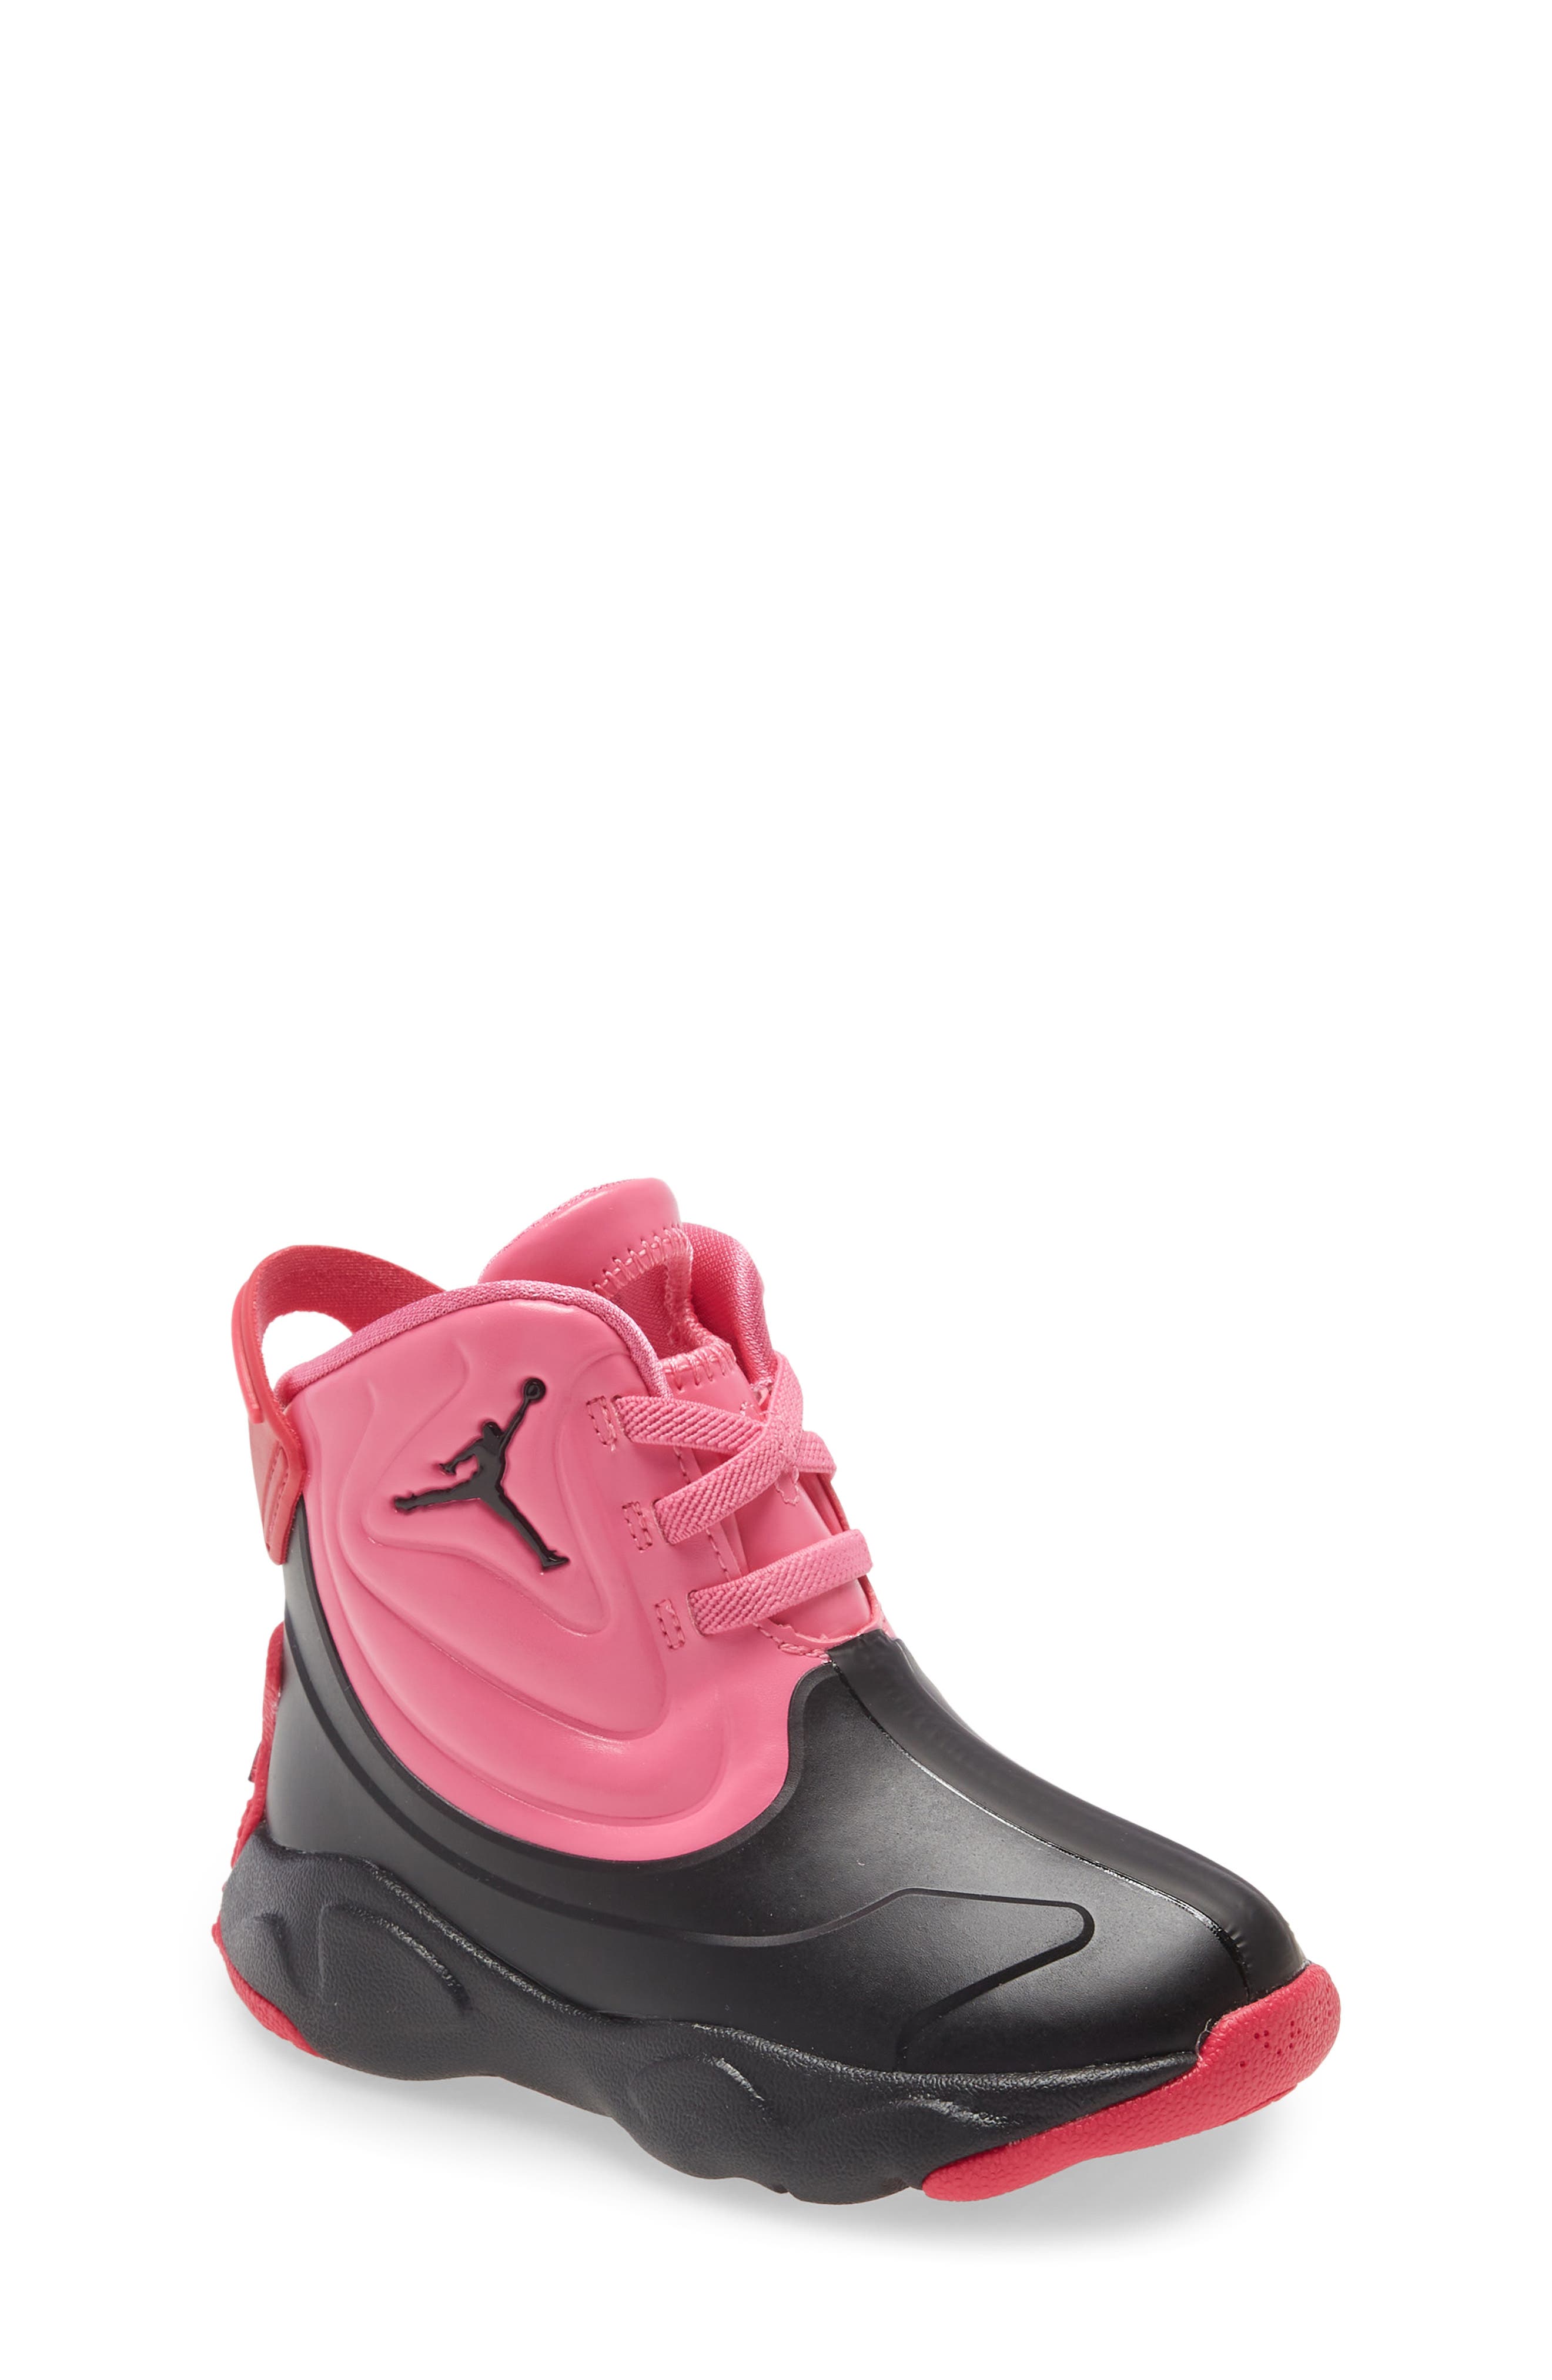 Girls' Jordan Boots \u0026 Booties | Nordstrom